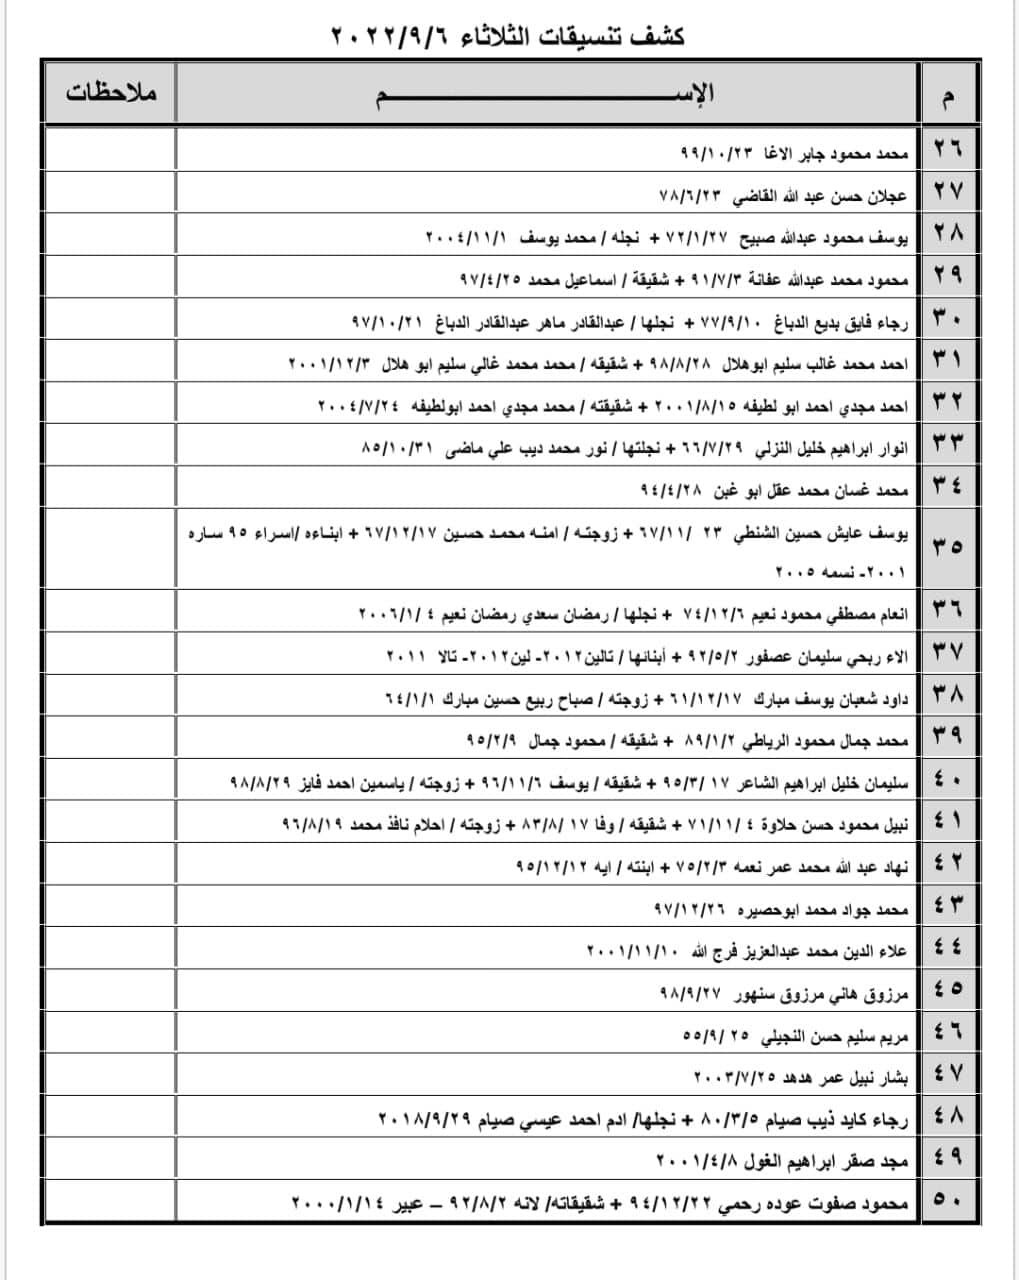 بالأسماء: كشف تنسيقات مصرية للسفر عبر معبر رفح يوم الثلاثاء 6 سبتمبر